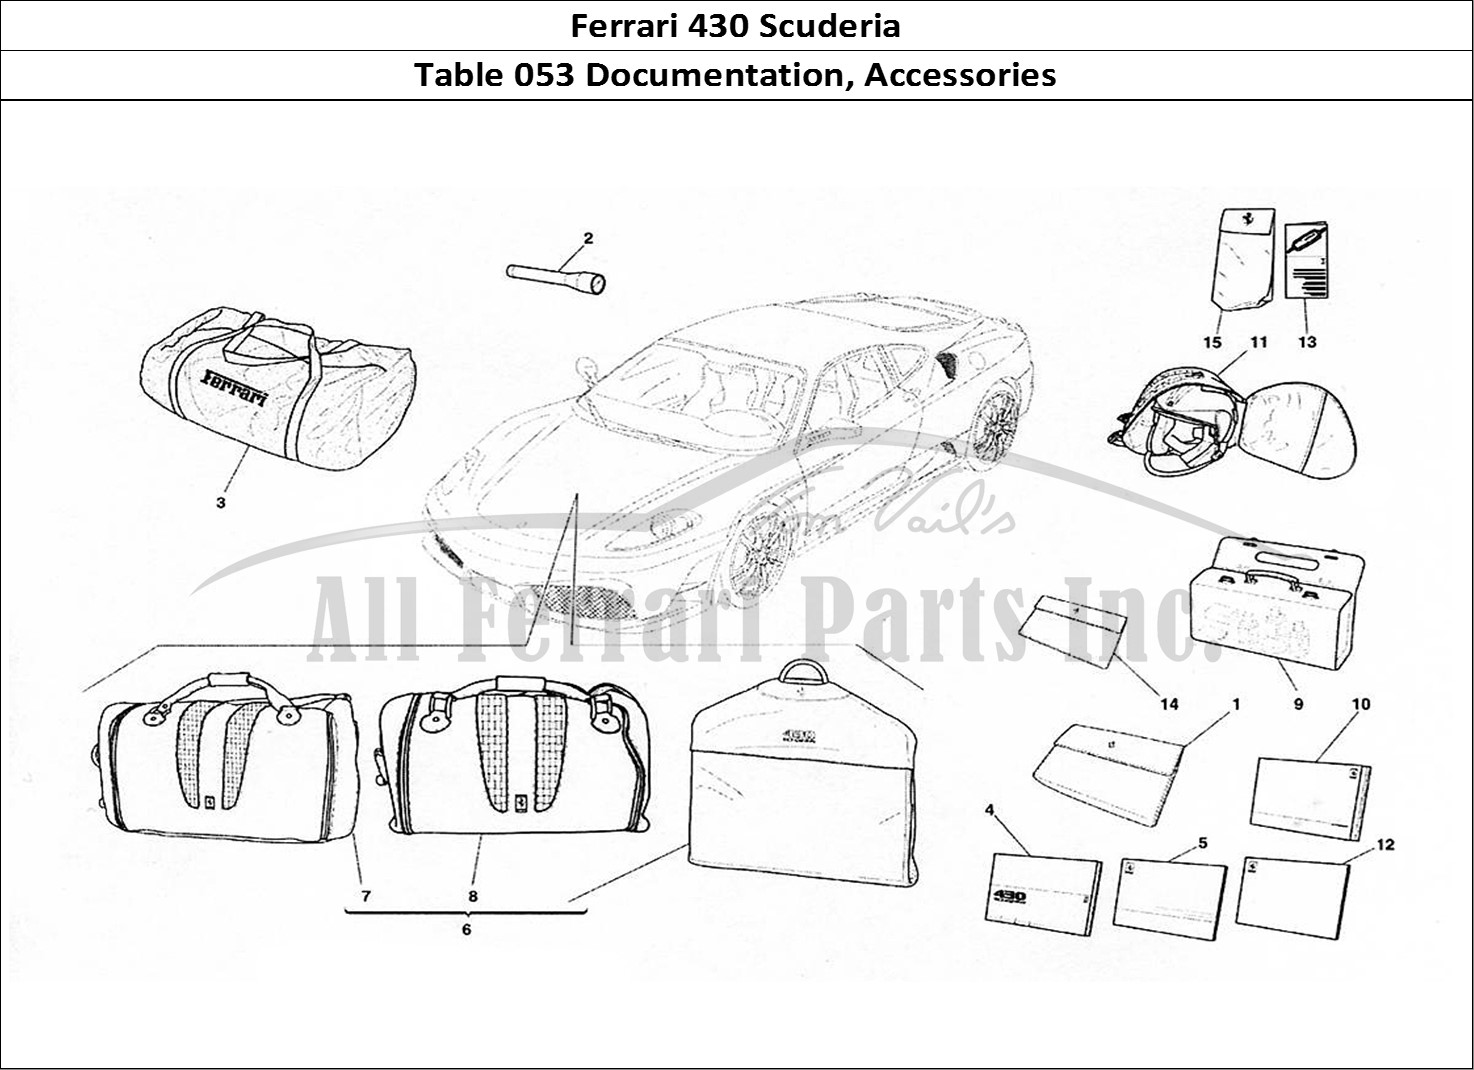 Ferrari Parts Ferrari 430 Scuderia Page 053 Documentation and Accesso